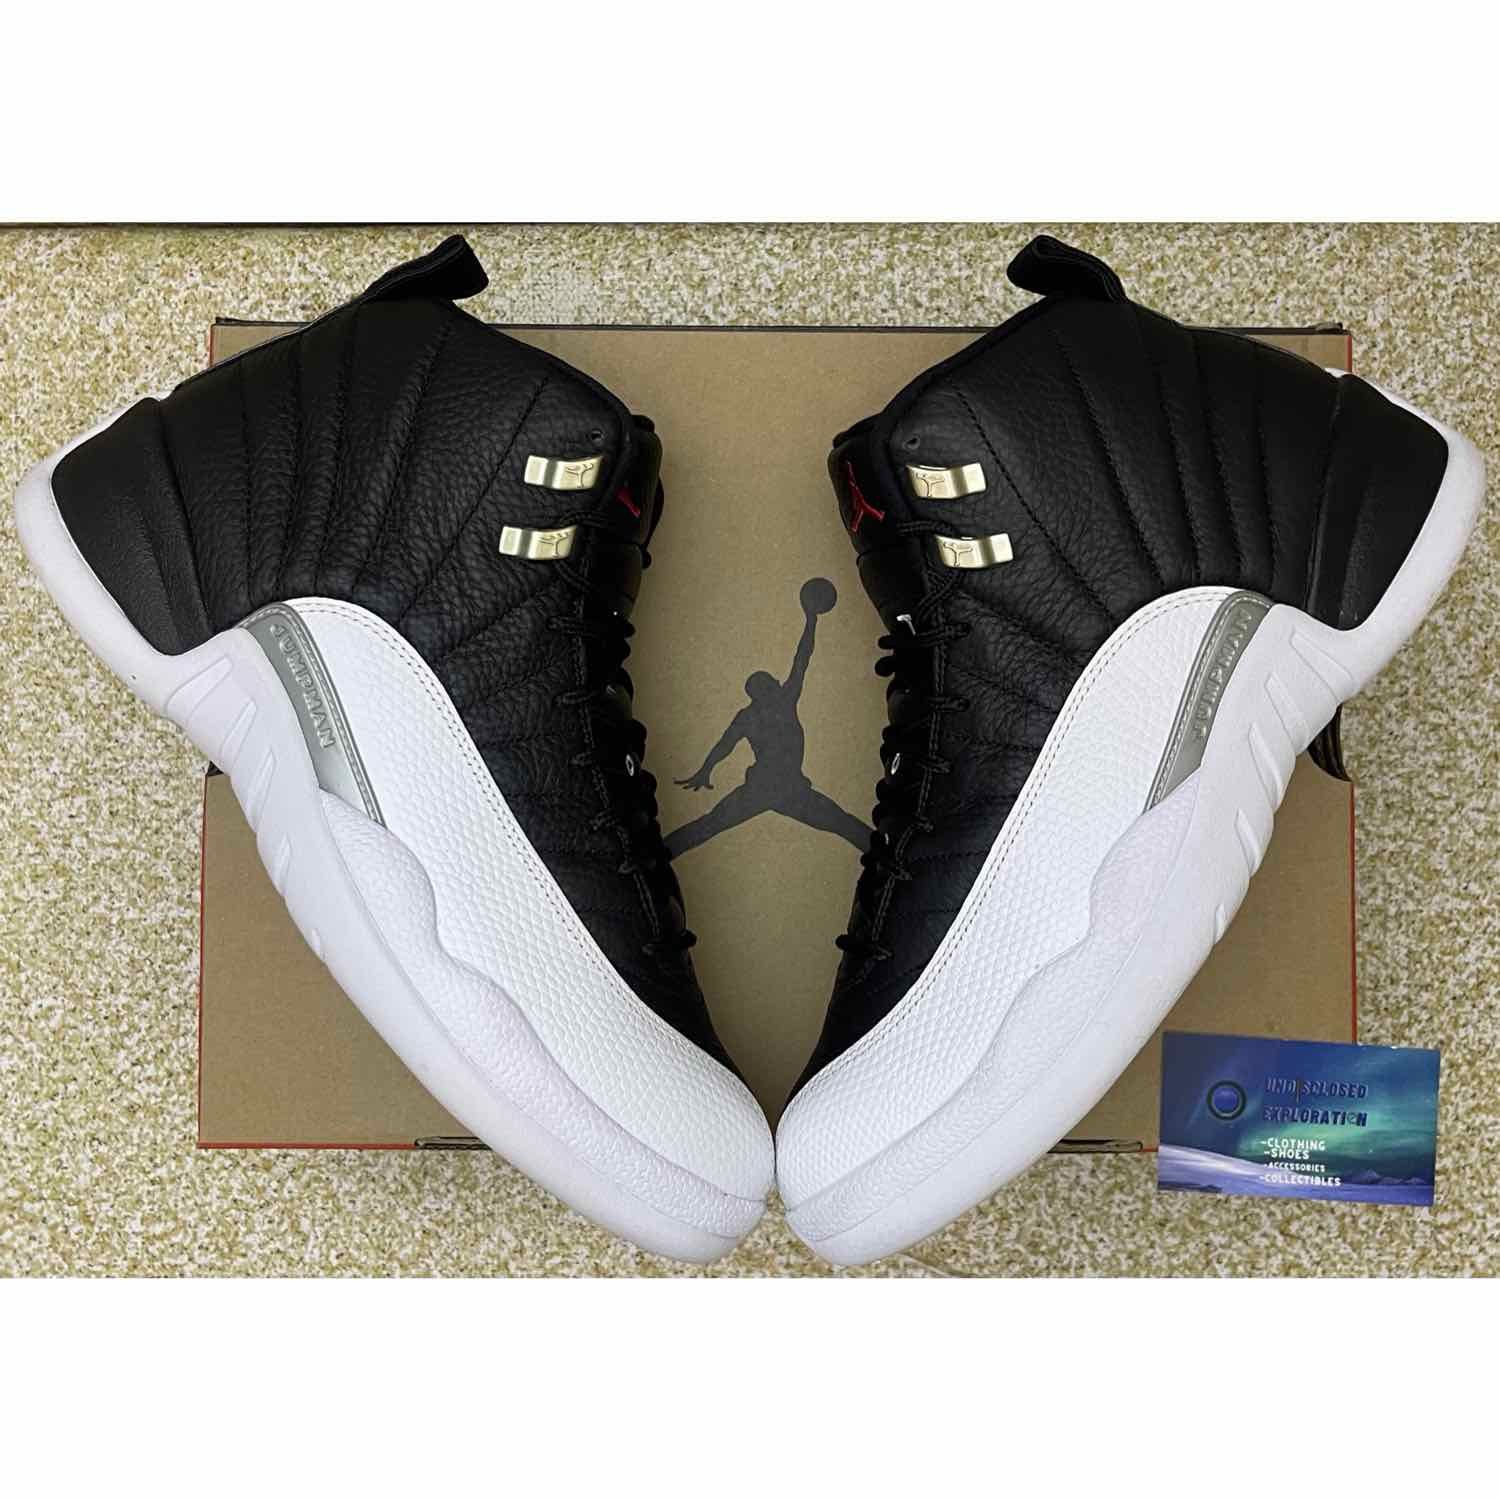 Nike Air Jordan 12 Playoff Size 10.5 Men